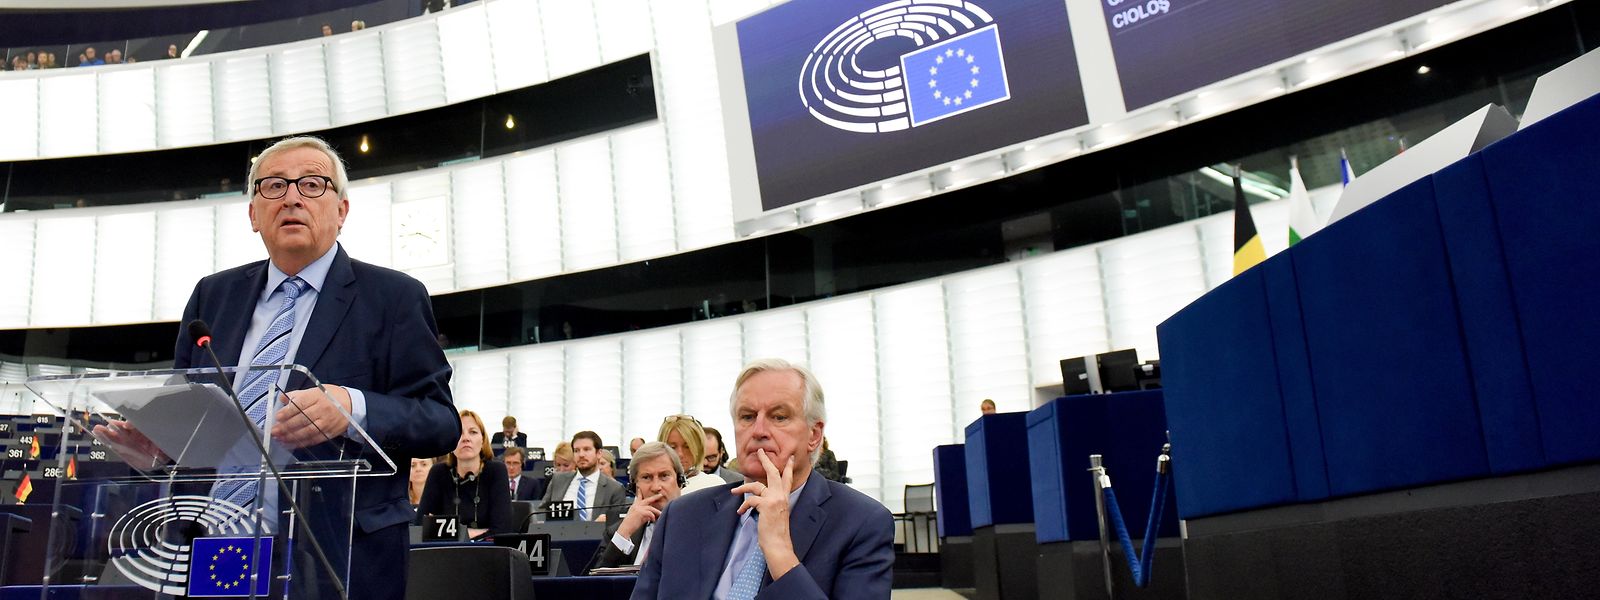 Pour sa dernière allocution devant le Parlement européen, Jean-Claude Juncker a fait part de sa déception quant au départ du Royaume-Uni de l'Union européenne.